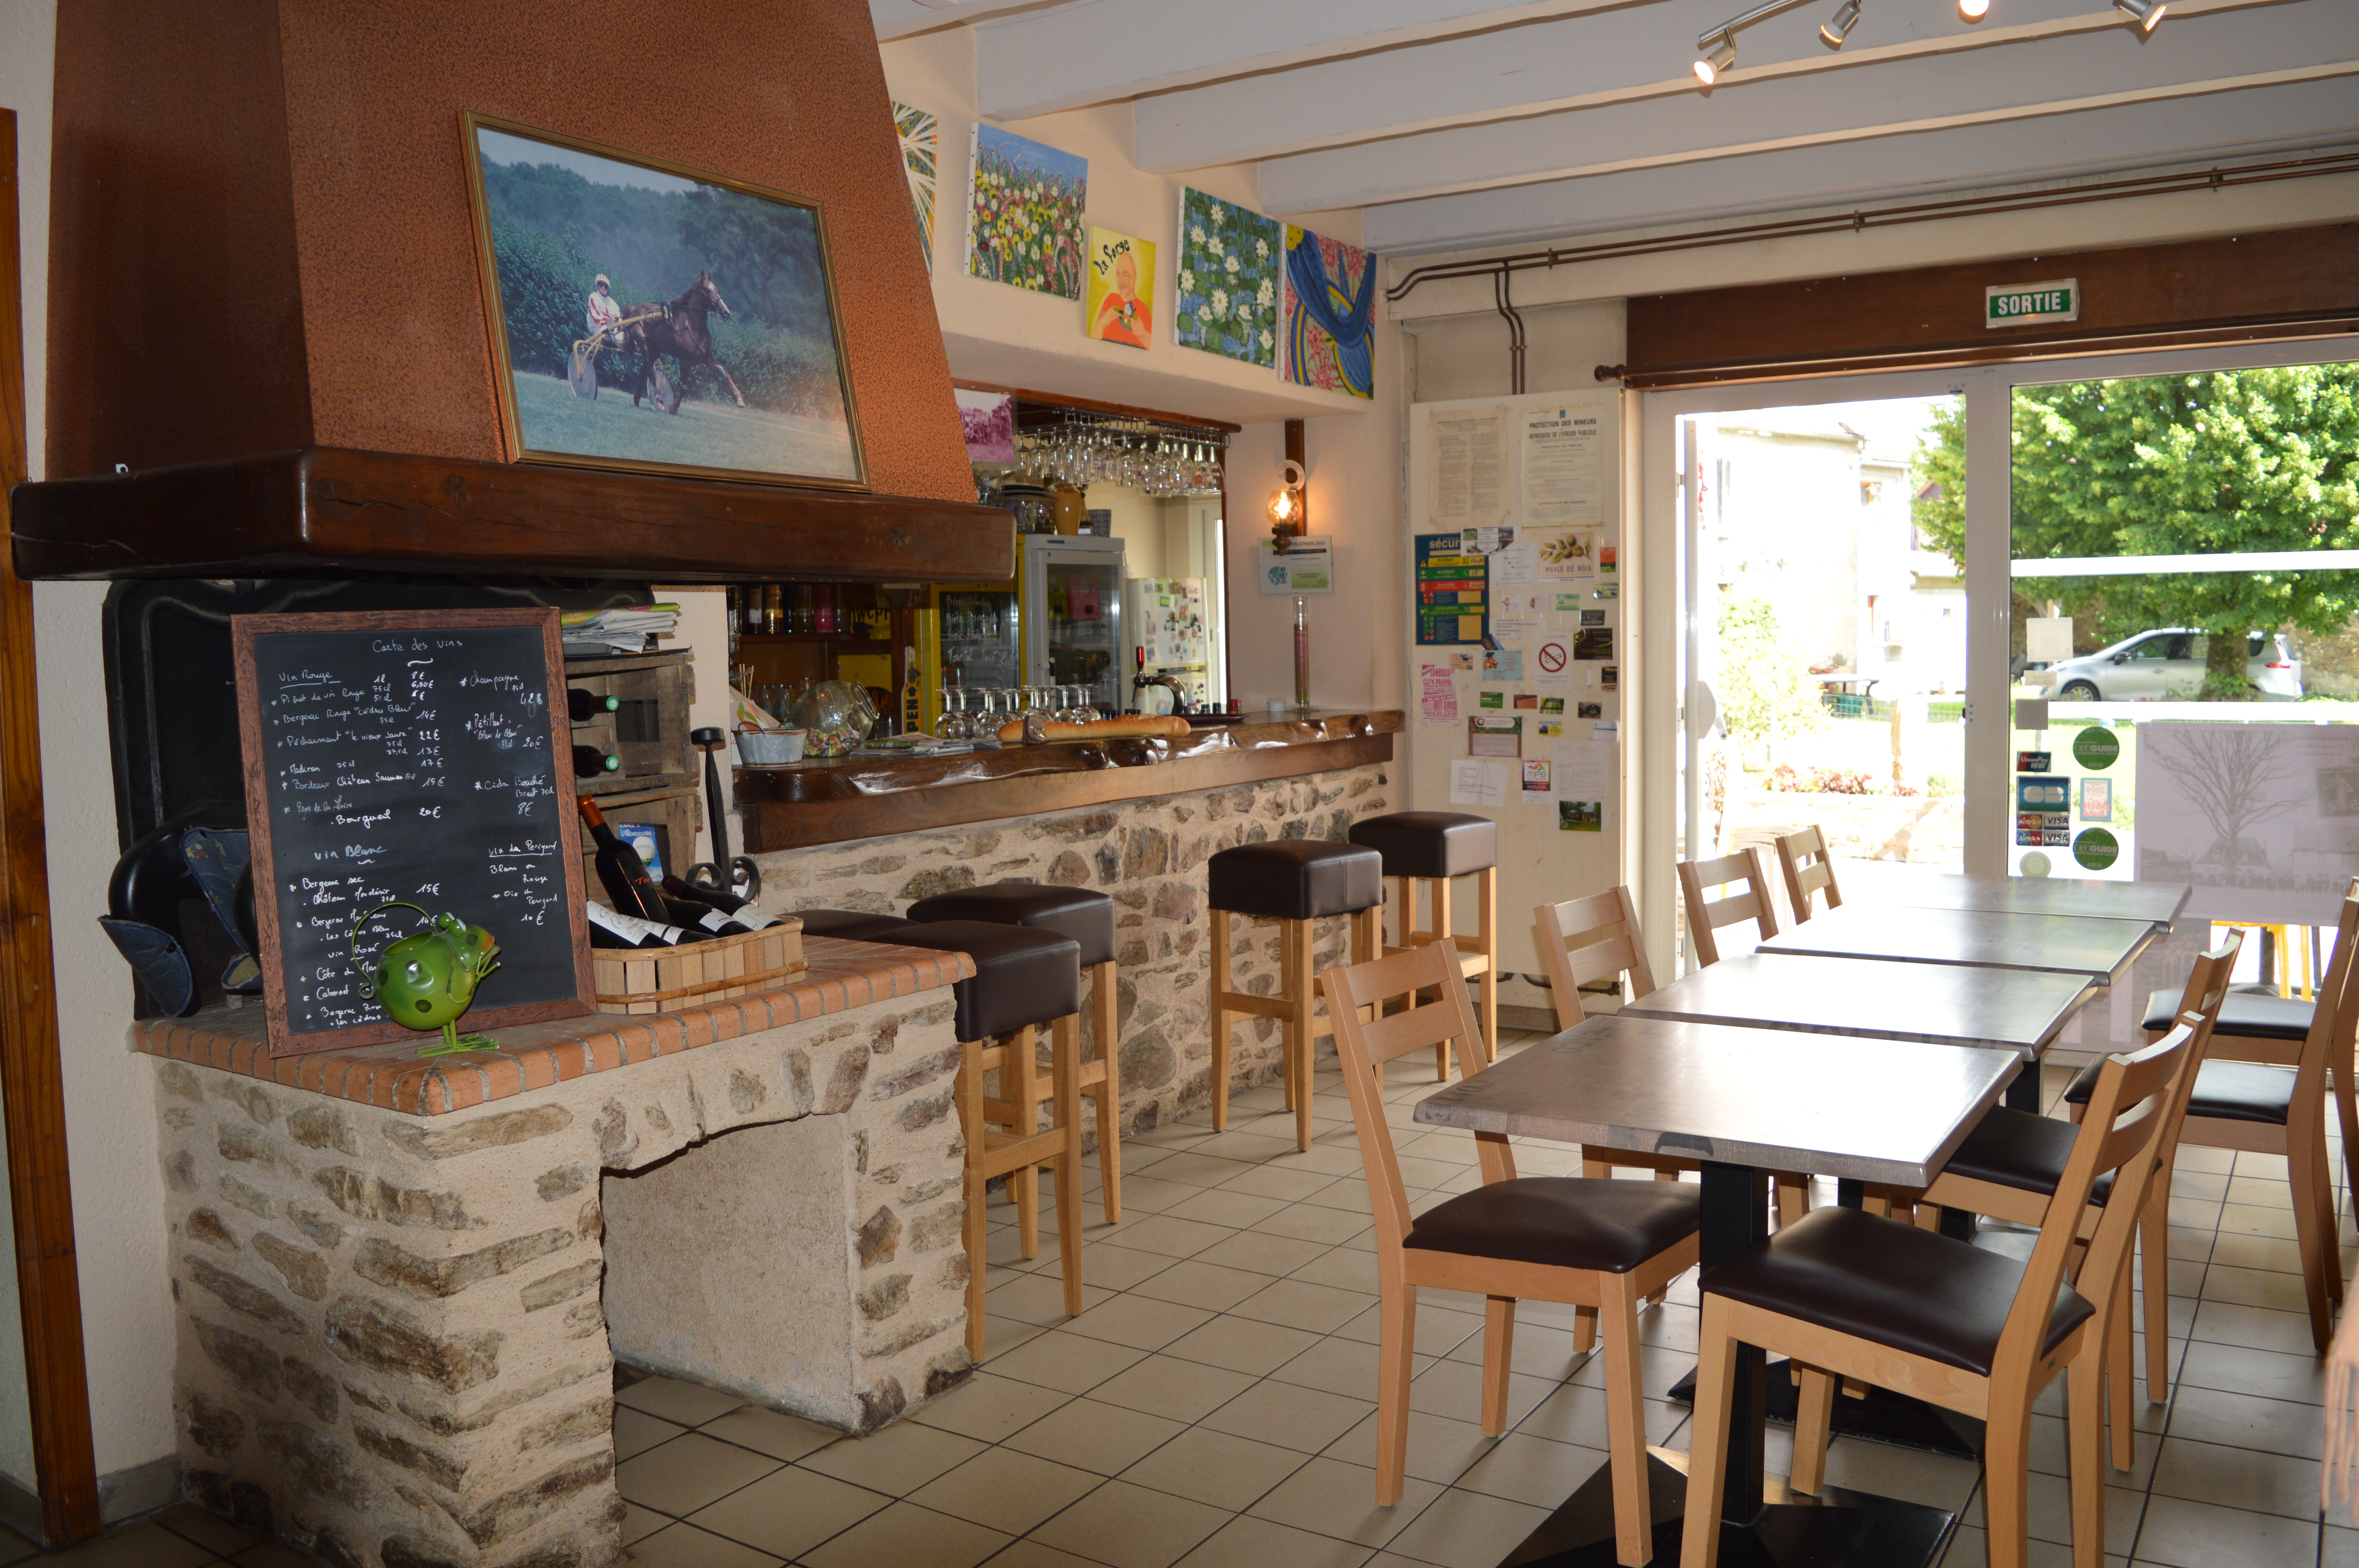 LOCATION GERANCE : La municipalité de SAVIGNAC LEDRIER (719 habitants) propose une location-gérance pour son bar-restaurant, situé dans le centre du bourg sur un axe passant (Excideuil-Juillac), au coeur de la vallée de l'Auvézère offrant de nombreux sites touristiques (aménagement des gorges de l'Auvézère, en 2019, au départ de Saint Mesmin jusqu'aux Forges de Savignac Lédrier). 
Capacité : salle de bar-restaurant de 50 couverts et terrasse de 20 places. Cuisine traditionnelle pour une clientèle de locaux, ouvriers et touristique. Logement à l'étage : 2 chambres - Salon - Salle à manger - Sanitaires. Loyer de 500€ (360€ TTC pour le commerce et 140€ pour le logement à l'étage). Idéal pour un couple - Solide expérience en cuisine demandée.